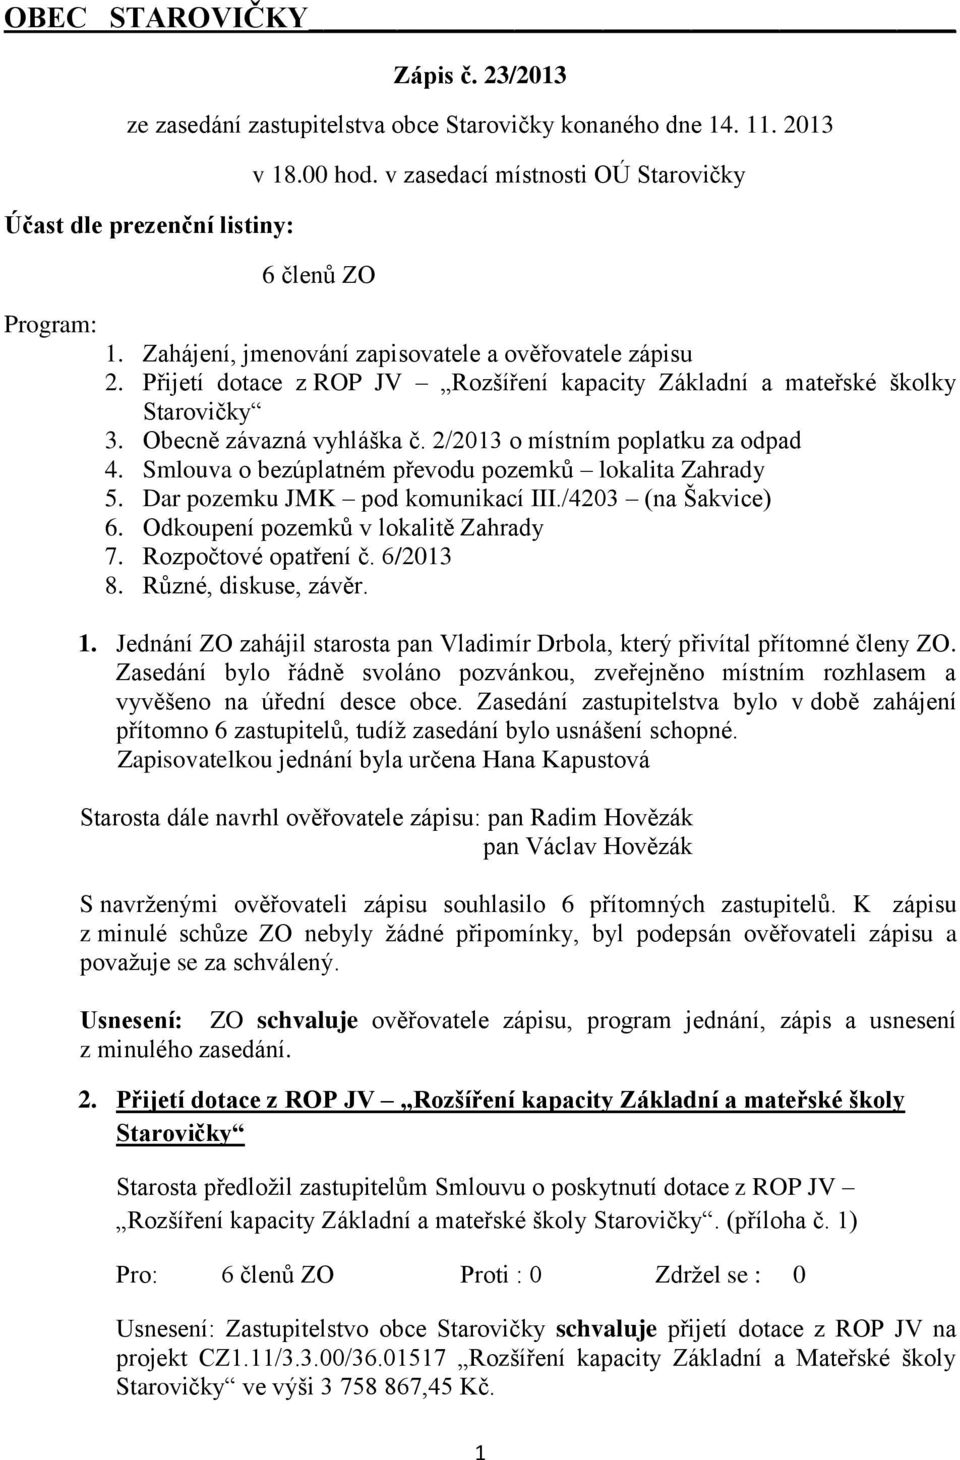 Obecně závazná vyhláška č. 2/2013 o místním poplatku za odpad 4. Smlouva o bezúplatném převodu pozemků lokalita Zahrady 5. Dar pozemku JMK pod komunikací III./4203 (na Šakvice) 6.